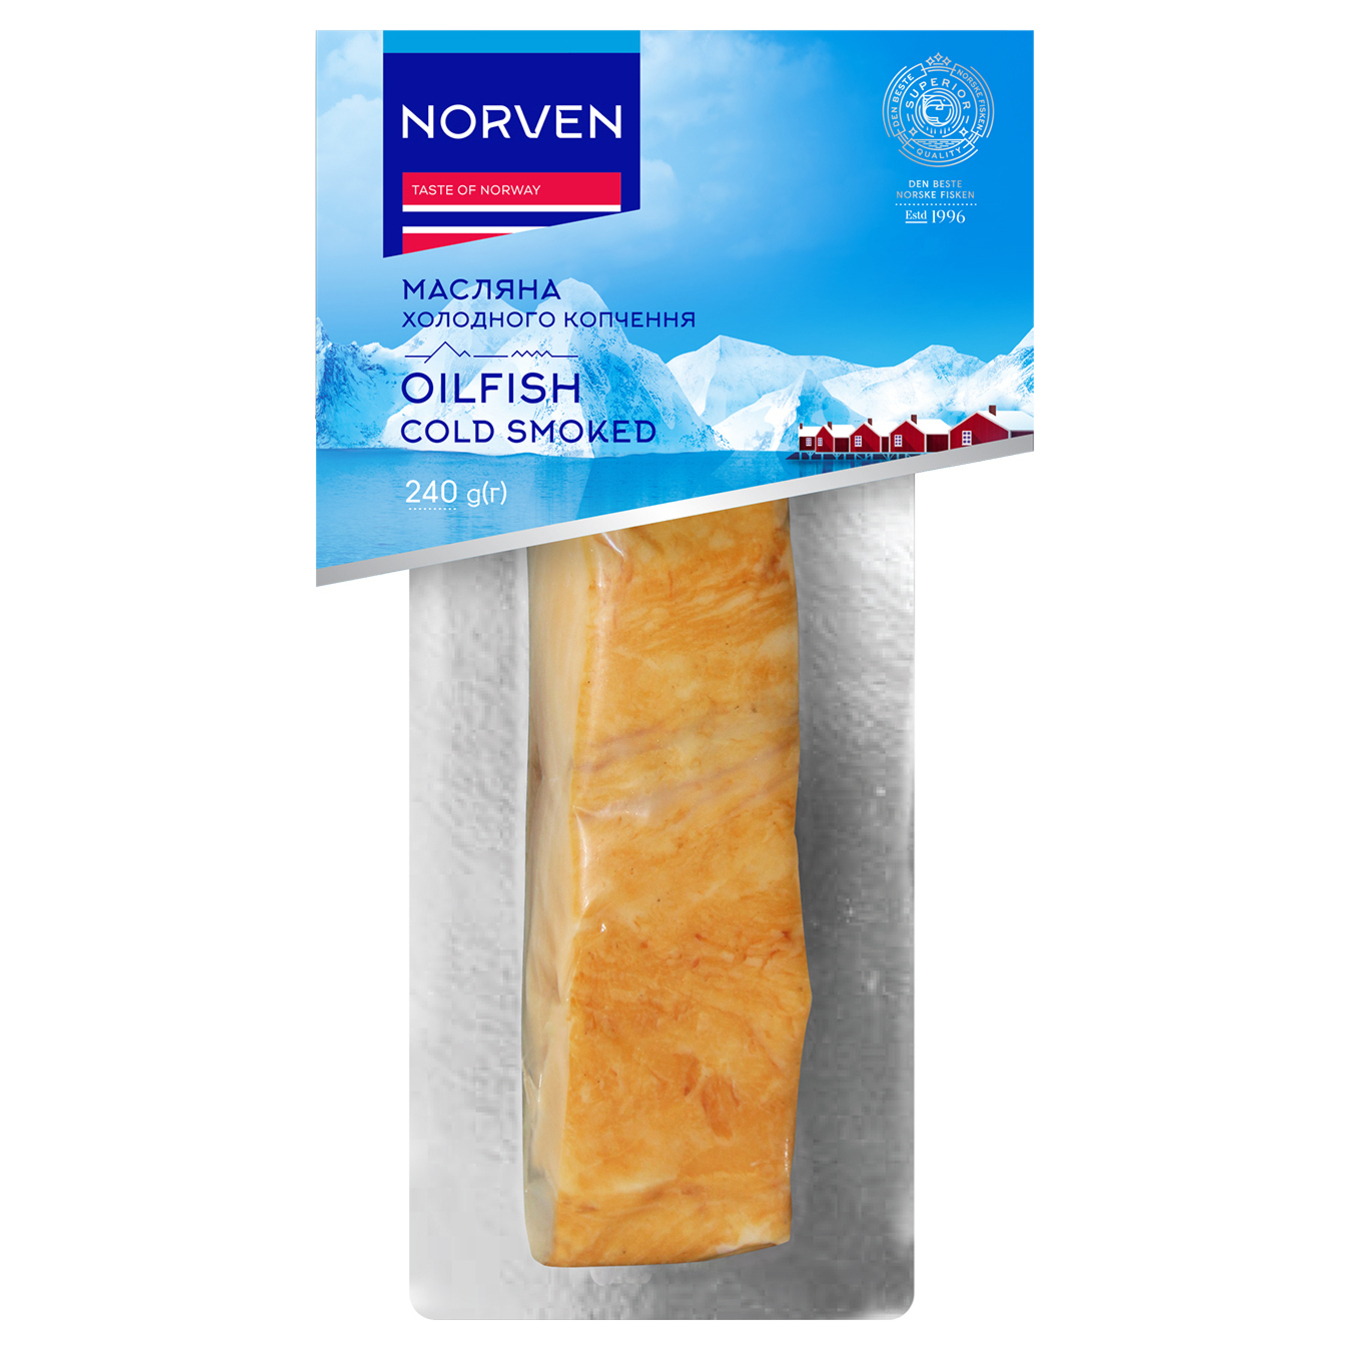 Масляная Norven холодного копчения филе-кусок 240г